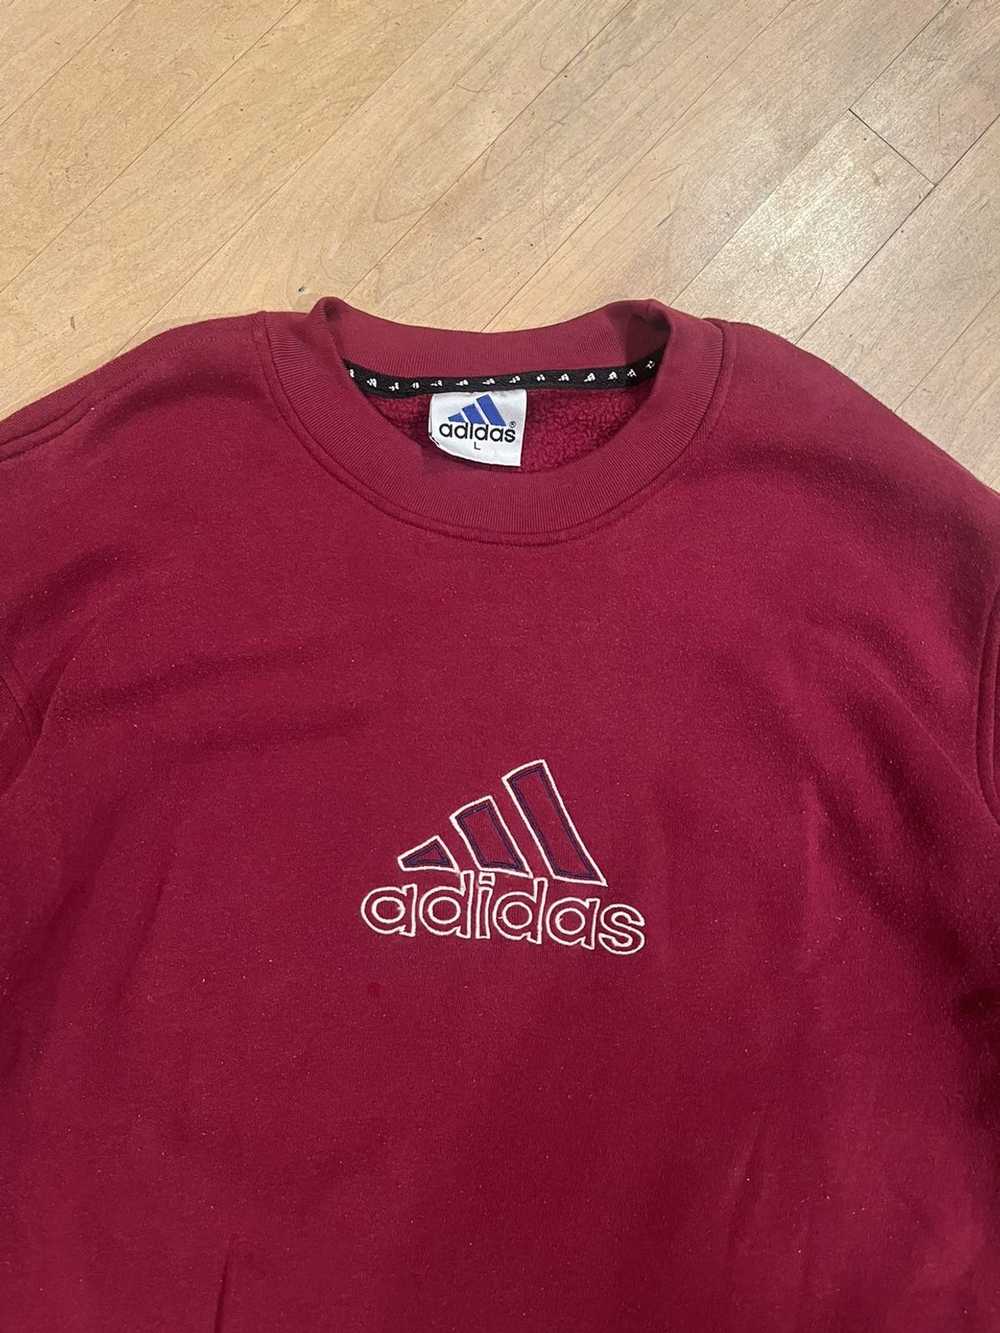 Adidas × Vintage Vintage 90s Adidas Sweatshirt - image 2